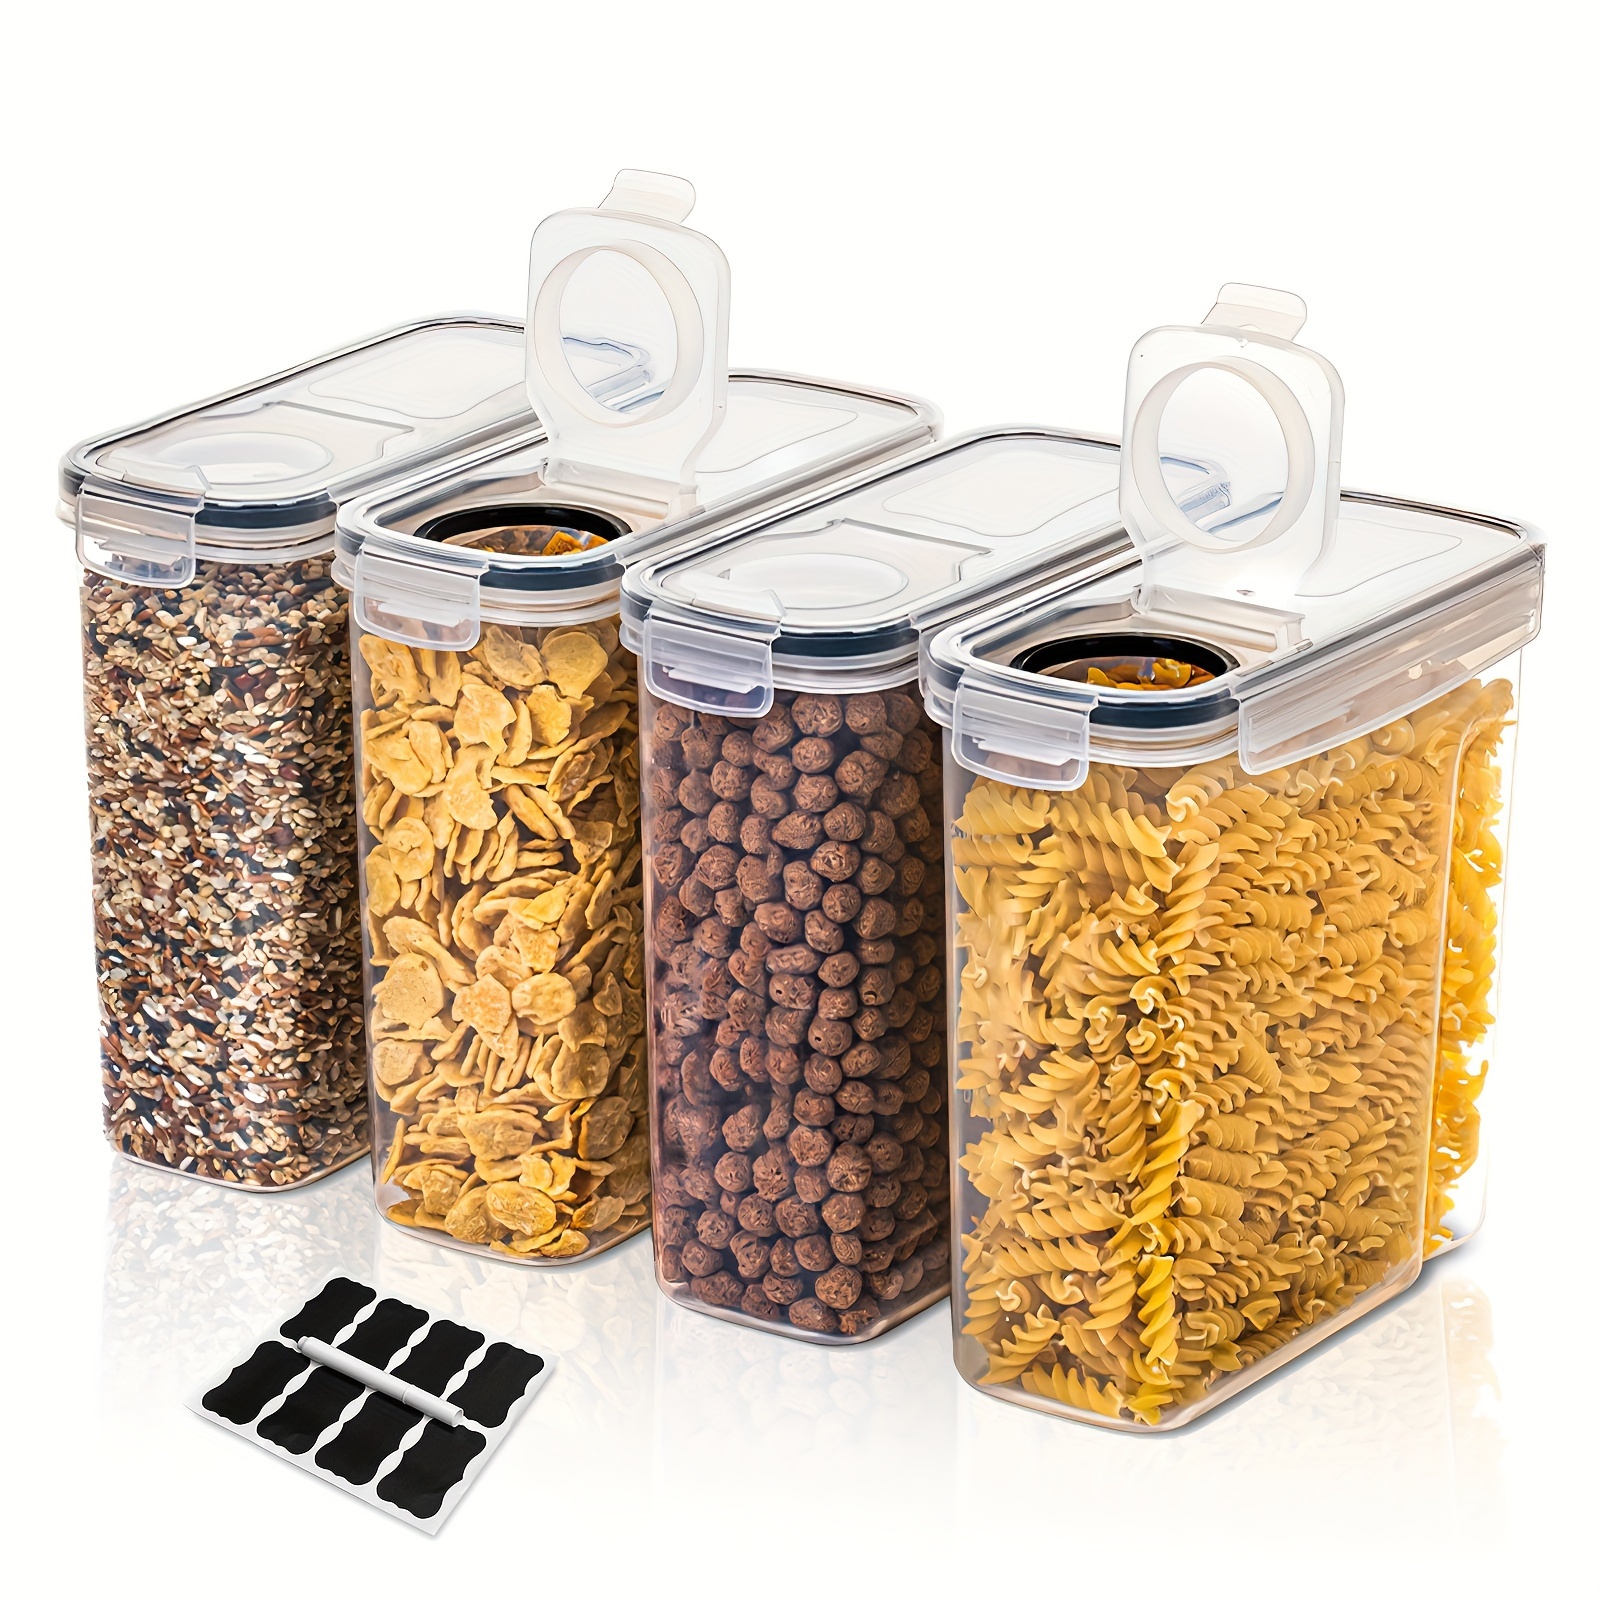  Juego de cajas de almacenamiento de cocina de 6 a 8 piezas,  recipientes herméticos para alimentos con tapas, tarros de plástico  sellados a granel para organizador transparente de cereales (color: negro